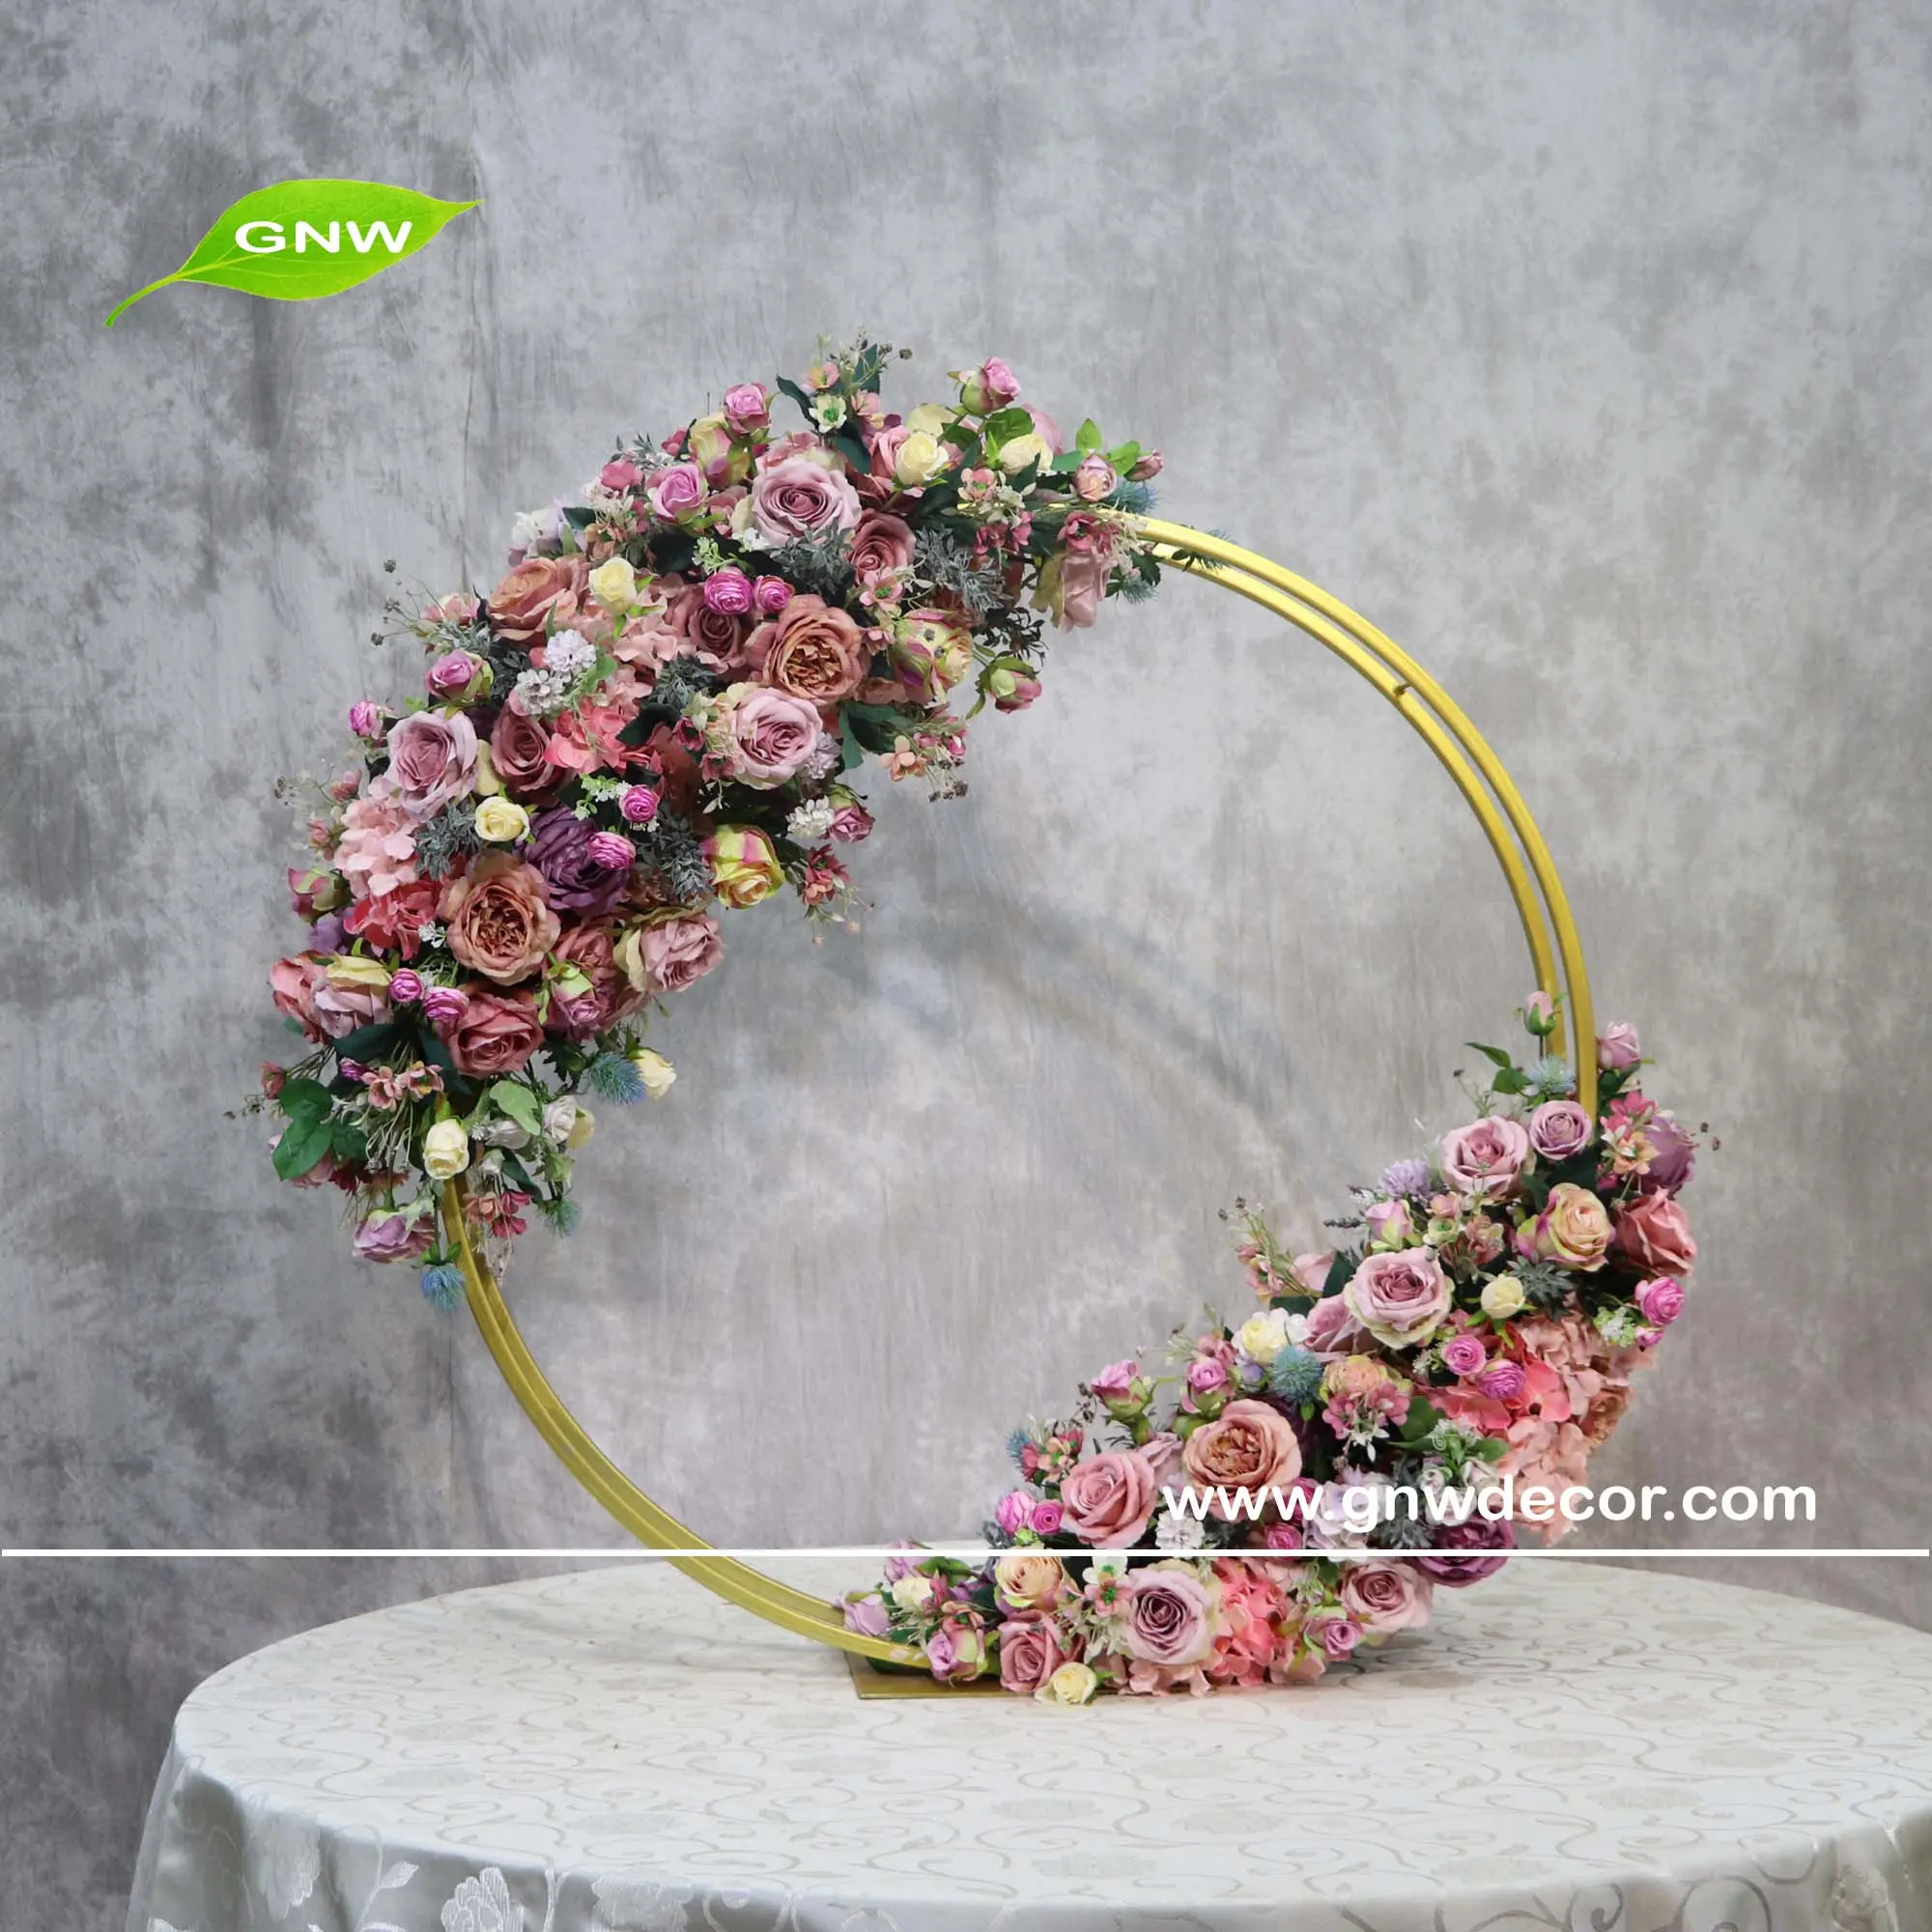 GNW lila Rose und Grün Blume Ball Tisch Hochzeit Blume Mittelstücke Blumen Design